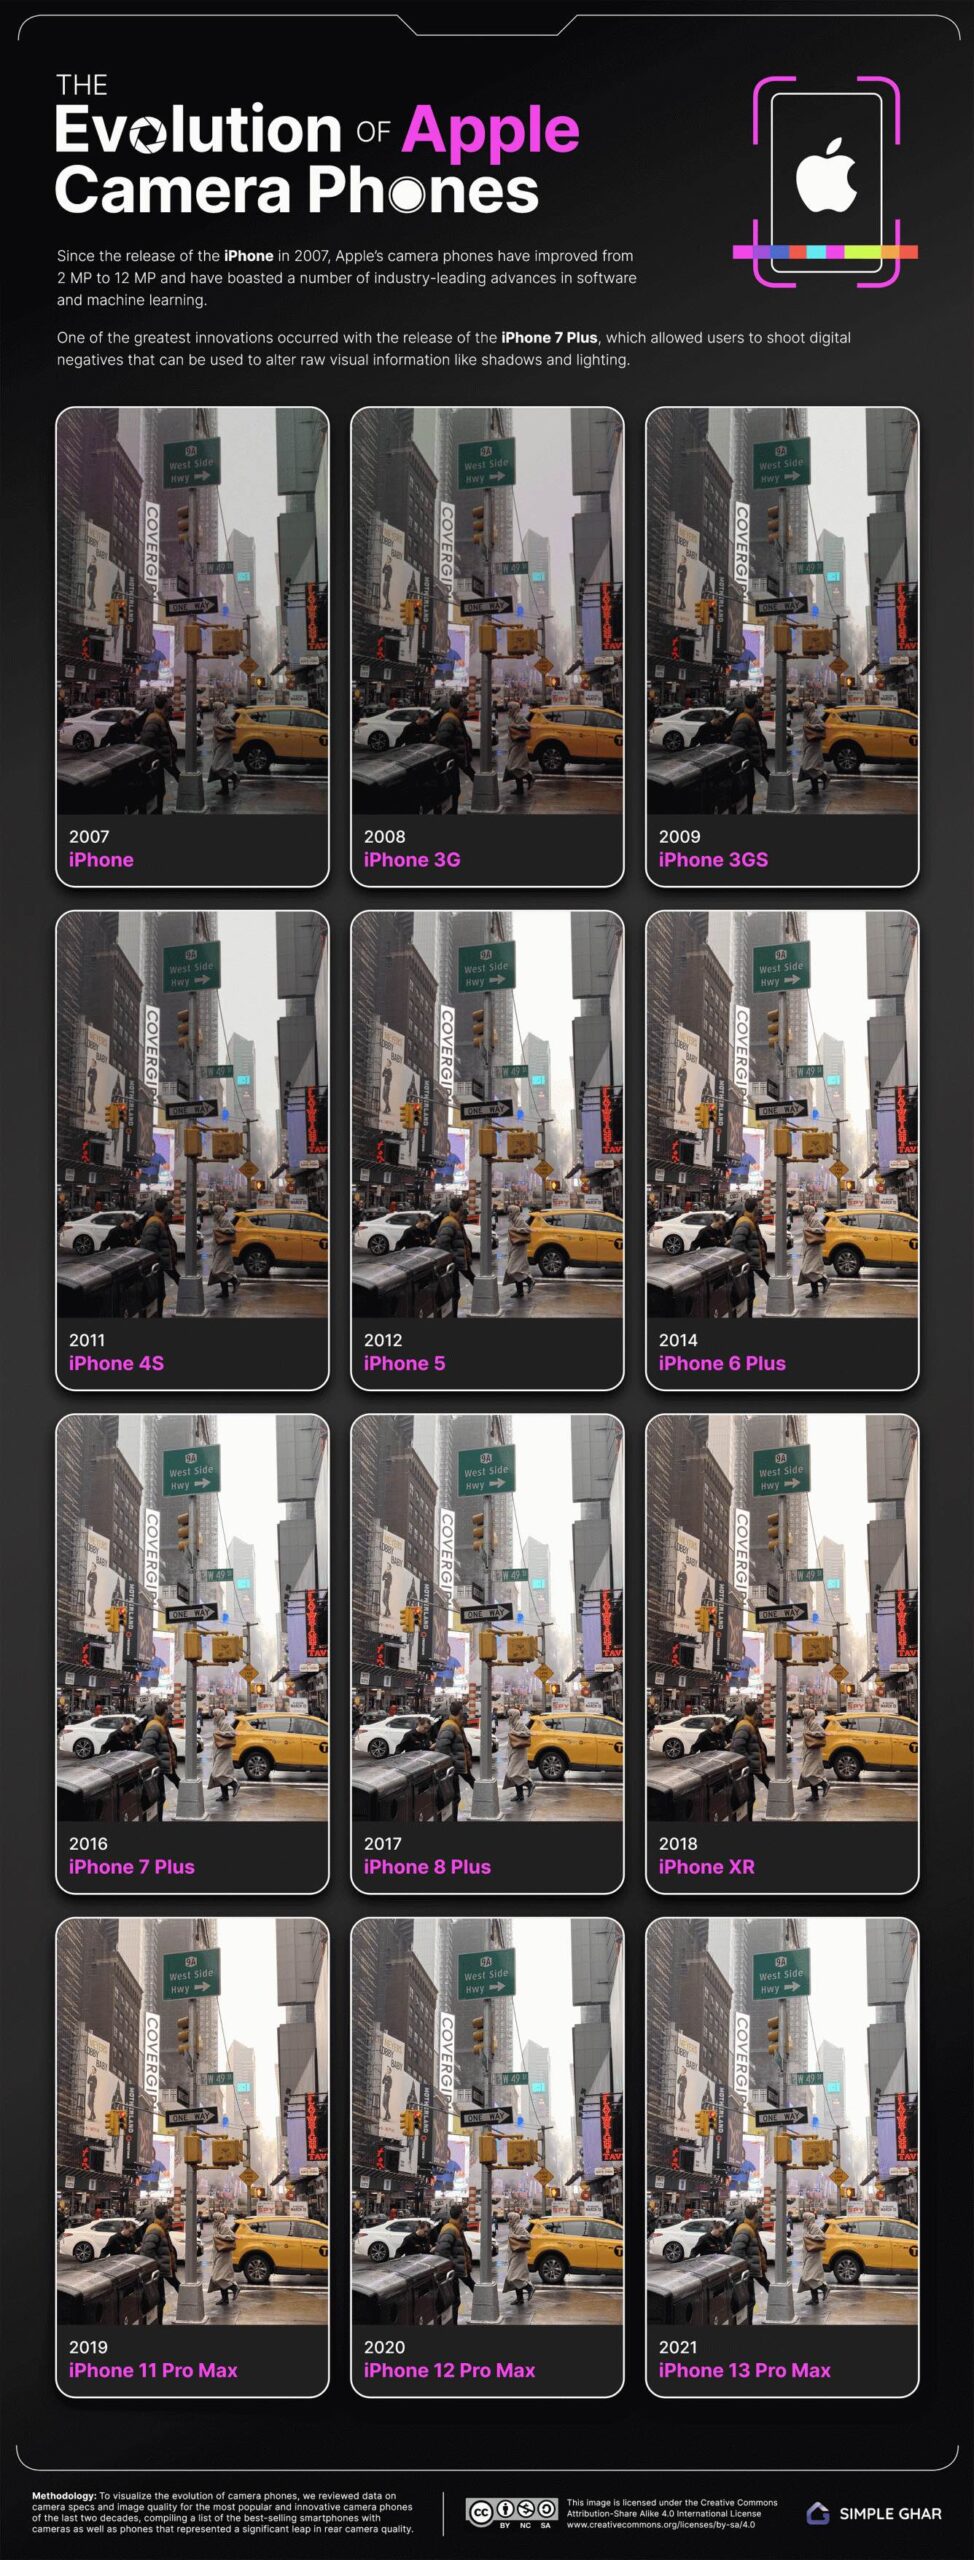 Porównujemy jakość aparatu każdego iPhone od 2G do 13 Pro ciekawostki porownanie aparatu wszystkich iphone, jakos zdjec iphone, iPhone  Użytkownik SimpleGhar stworzył interaktywne narzędzie, które pozwala porównać jakość aparatu każdego iPhone, od 2G do iPhone 13 Pro Max. ip scaled